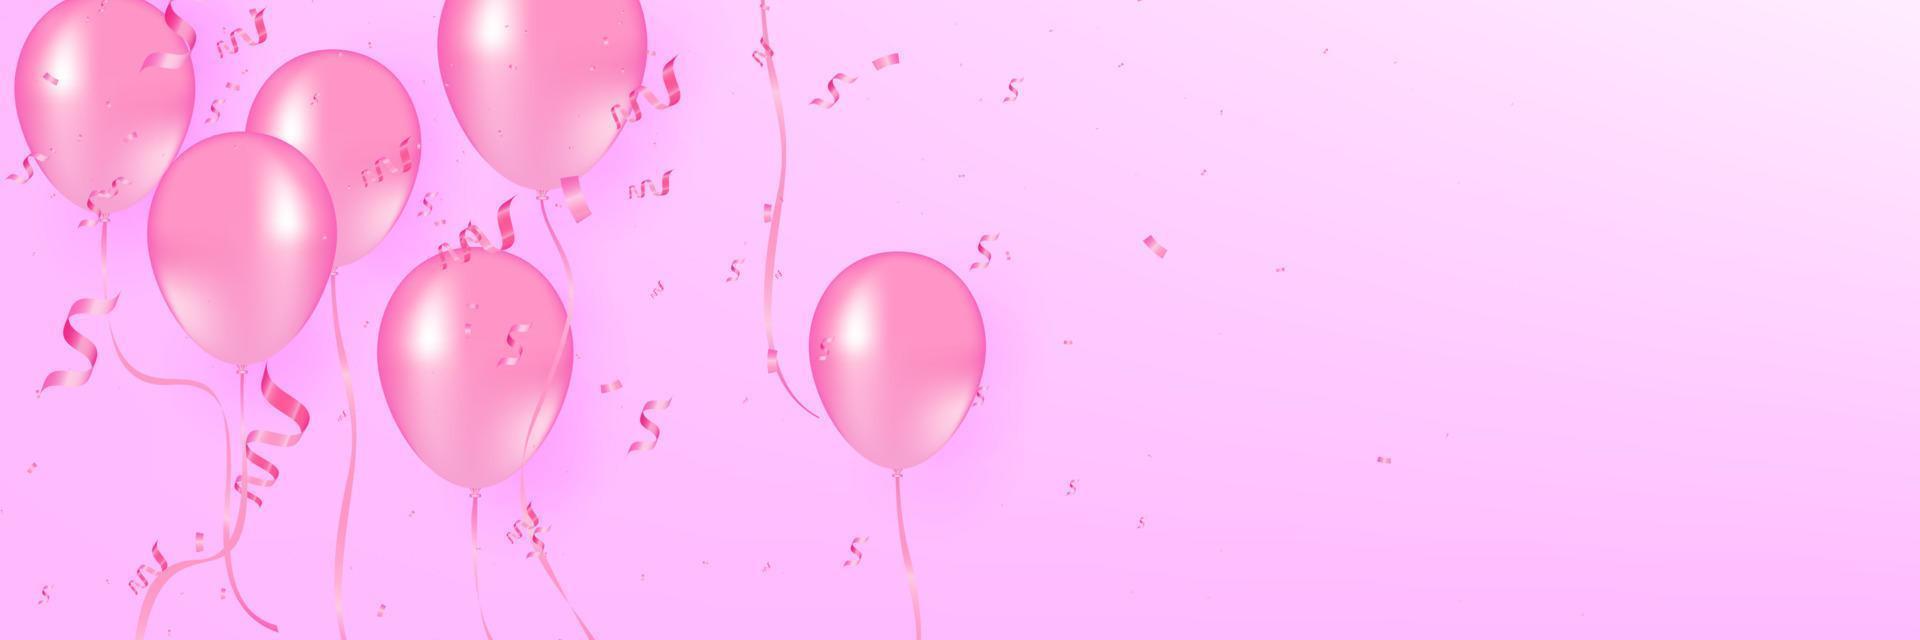 zacht rood ballonnen met confetti realistisch vector illustratie. roze ballonnen vector achtergrond. roze ballonnen en confetti kan worden gebruik partij, viering en vakantie.